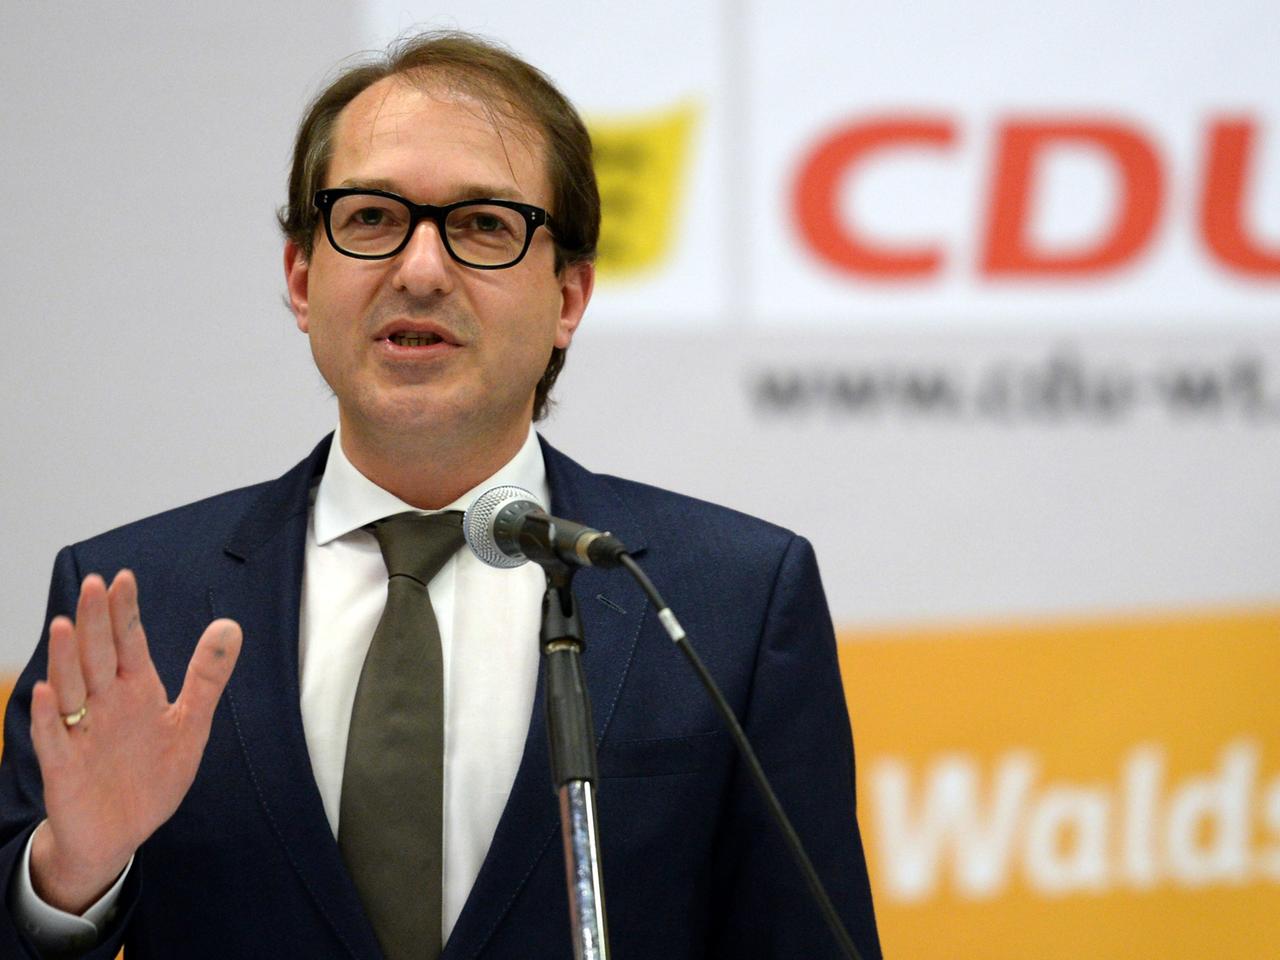 Alexander Dobrindt bei seiner Rede vor einem CDU-Logo.